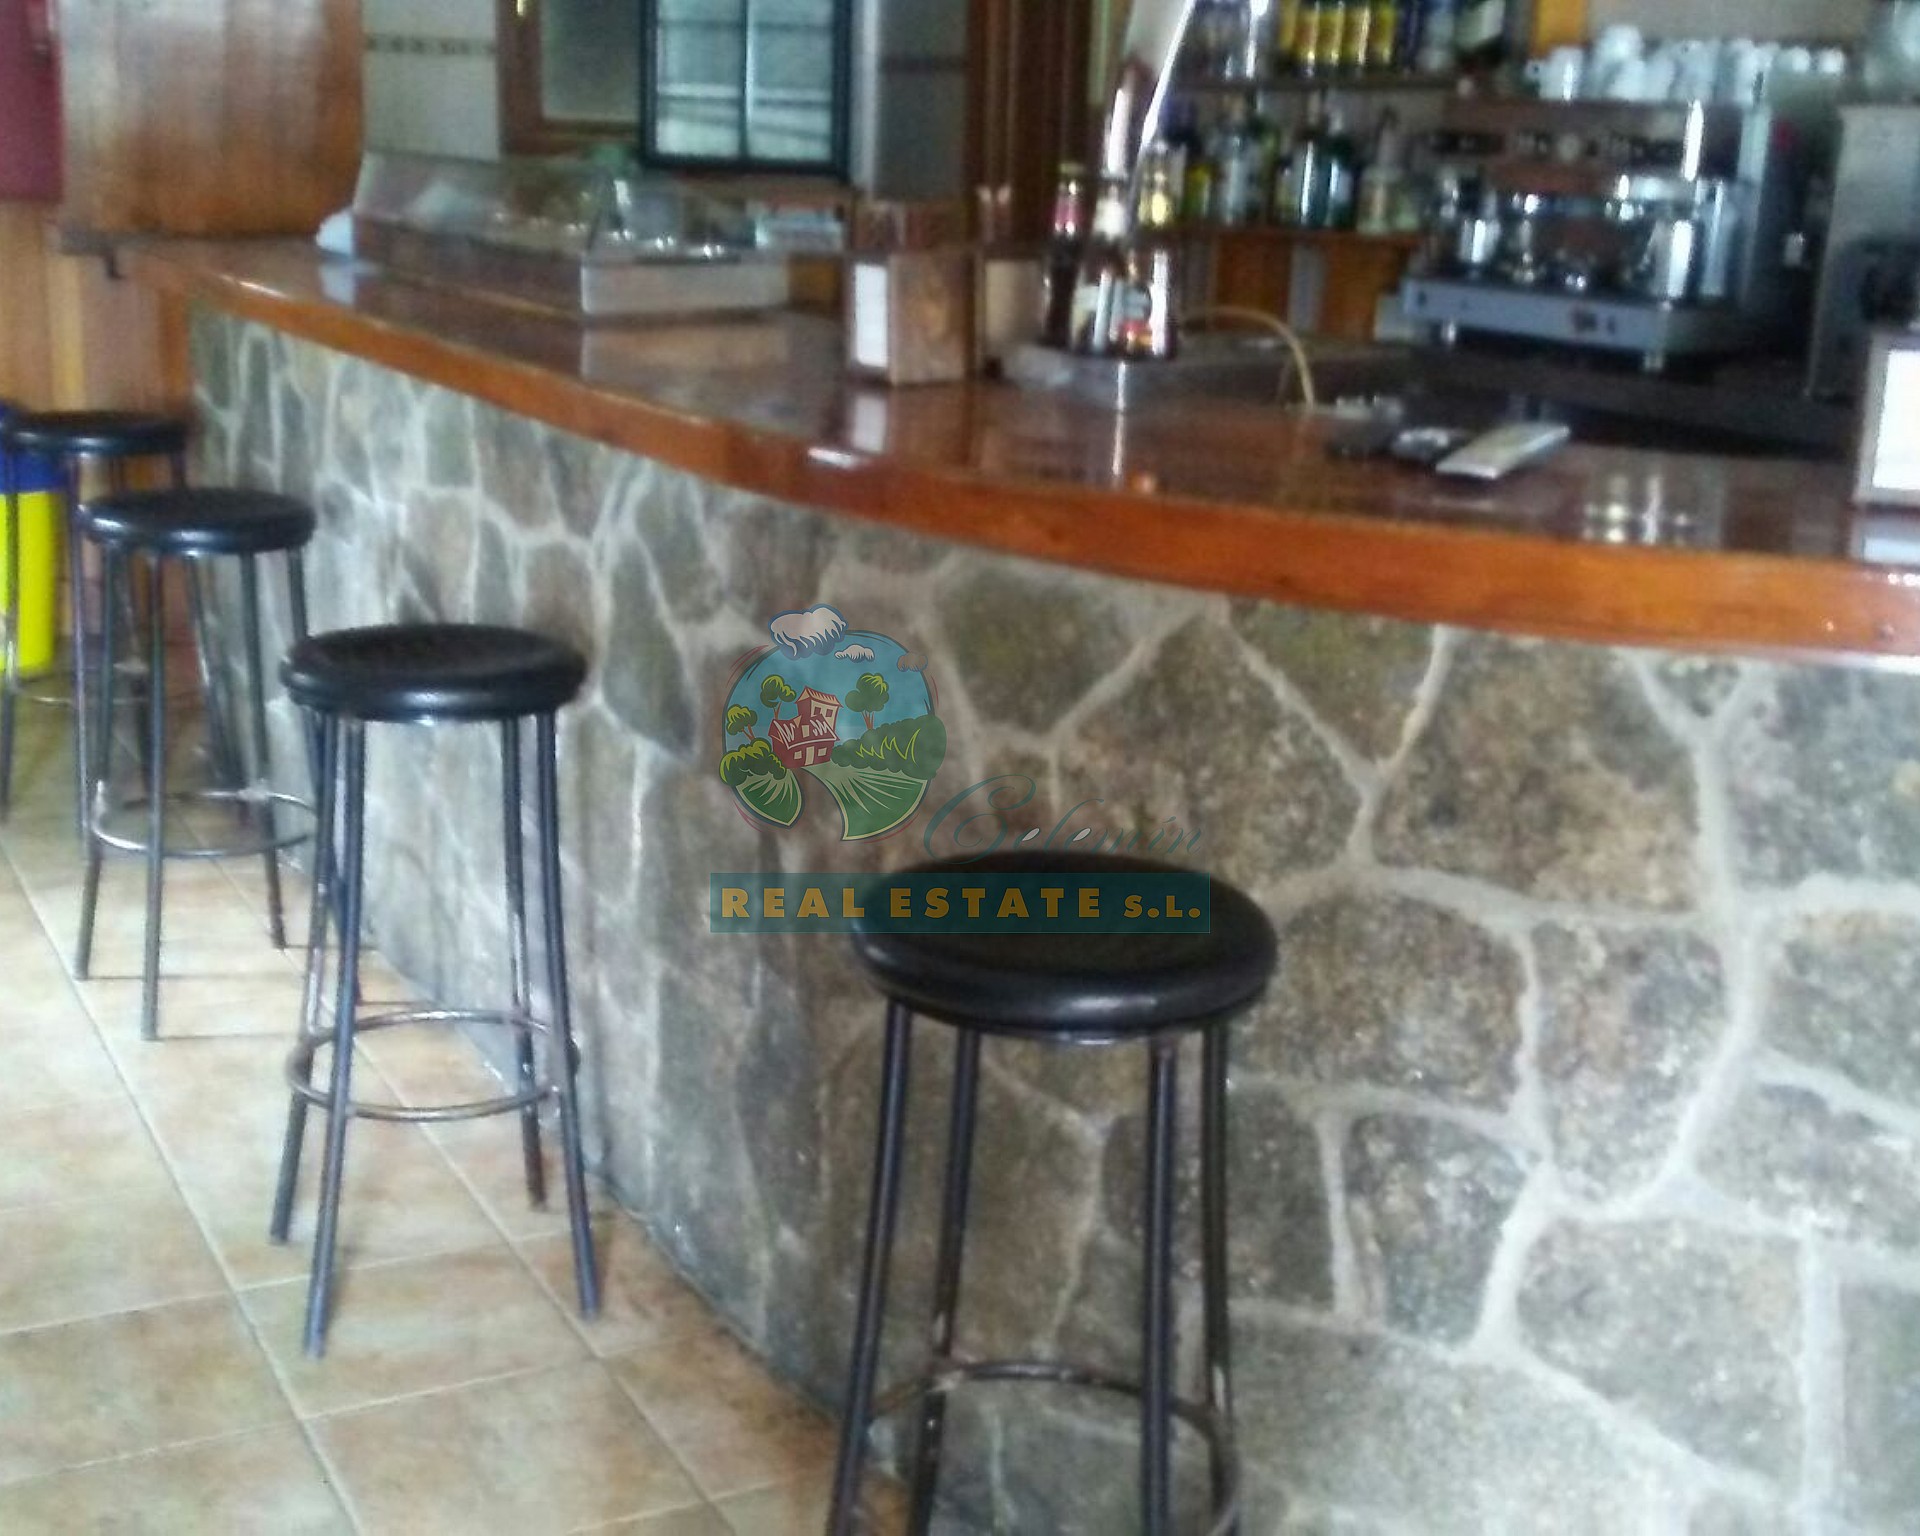 Bar business in Sierra de Gredos.